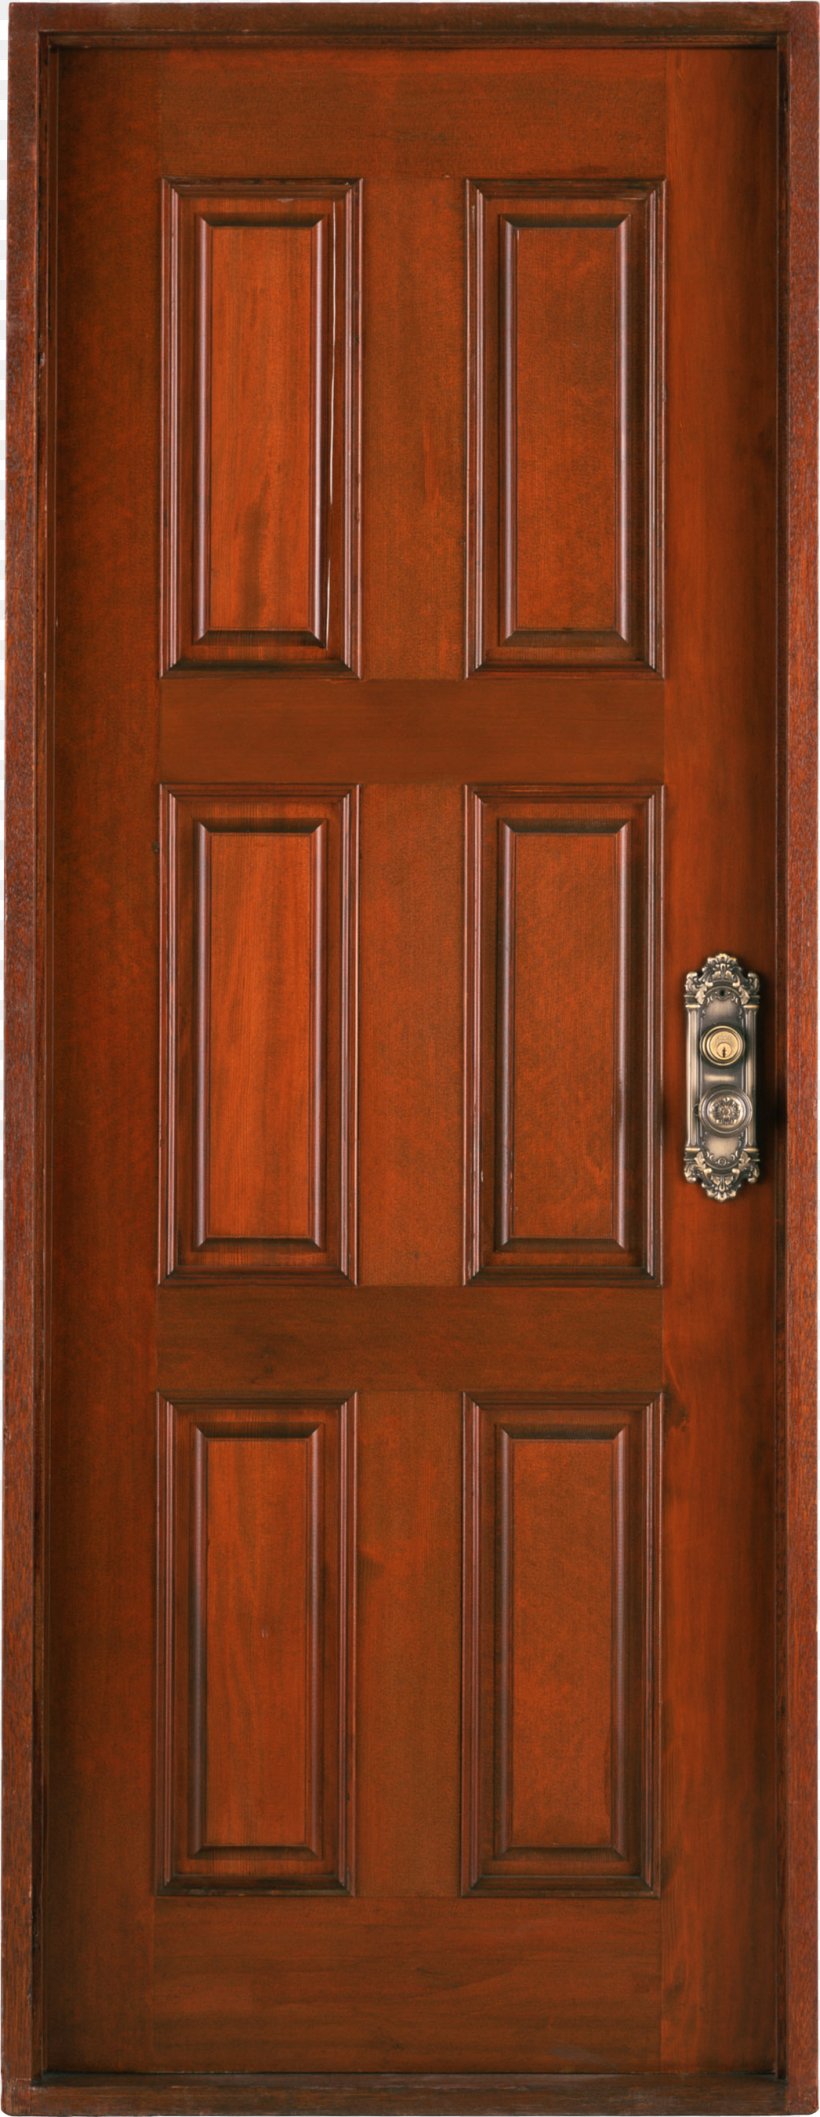 Door County, Wisconsin Window Gate Therma Tru Ltd, PNG, 1046x2701px, Door, Bed, Cabinetry, Chair, Commode Download Free